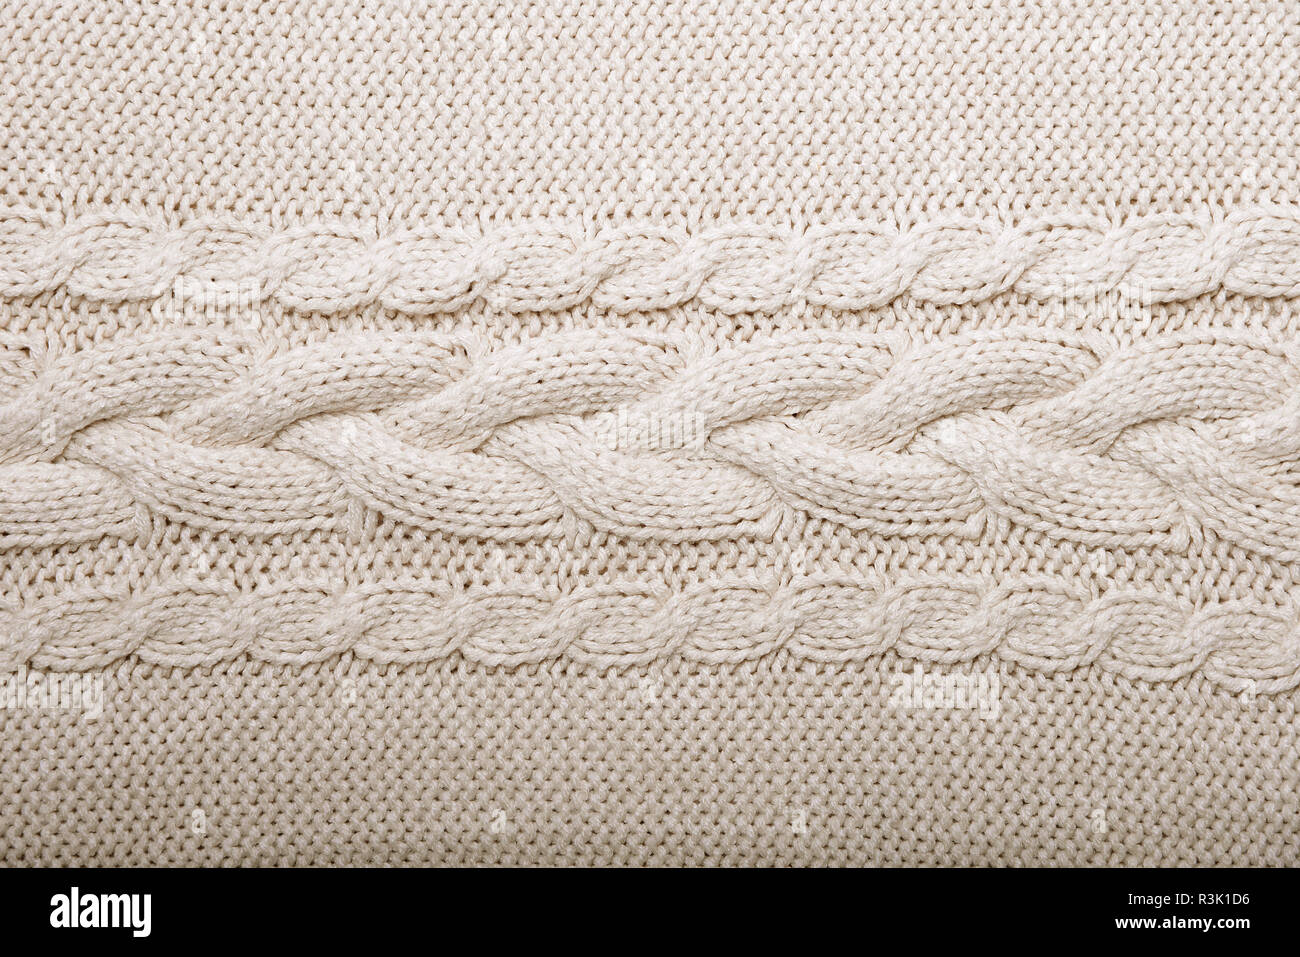 wool knit pattern Stock Photo